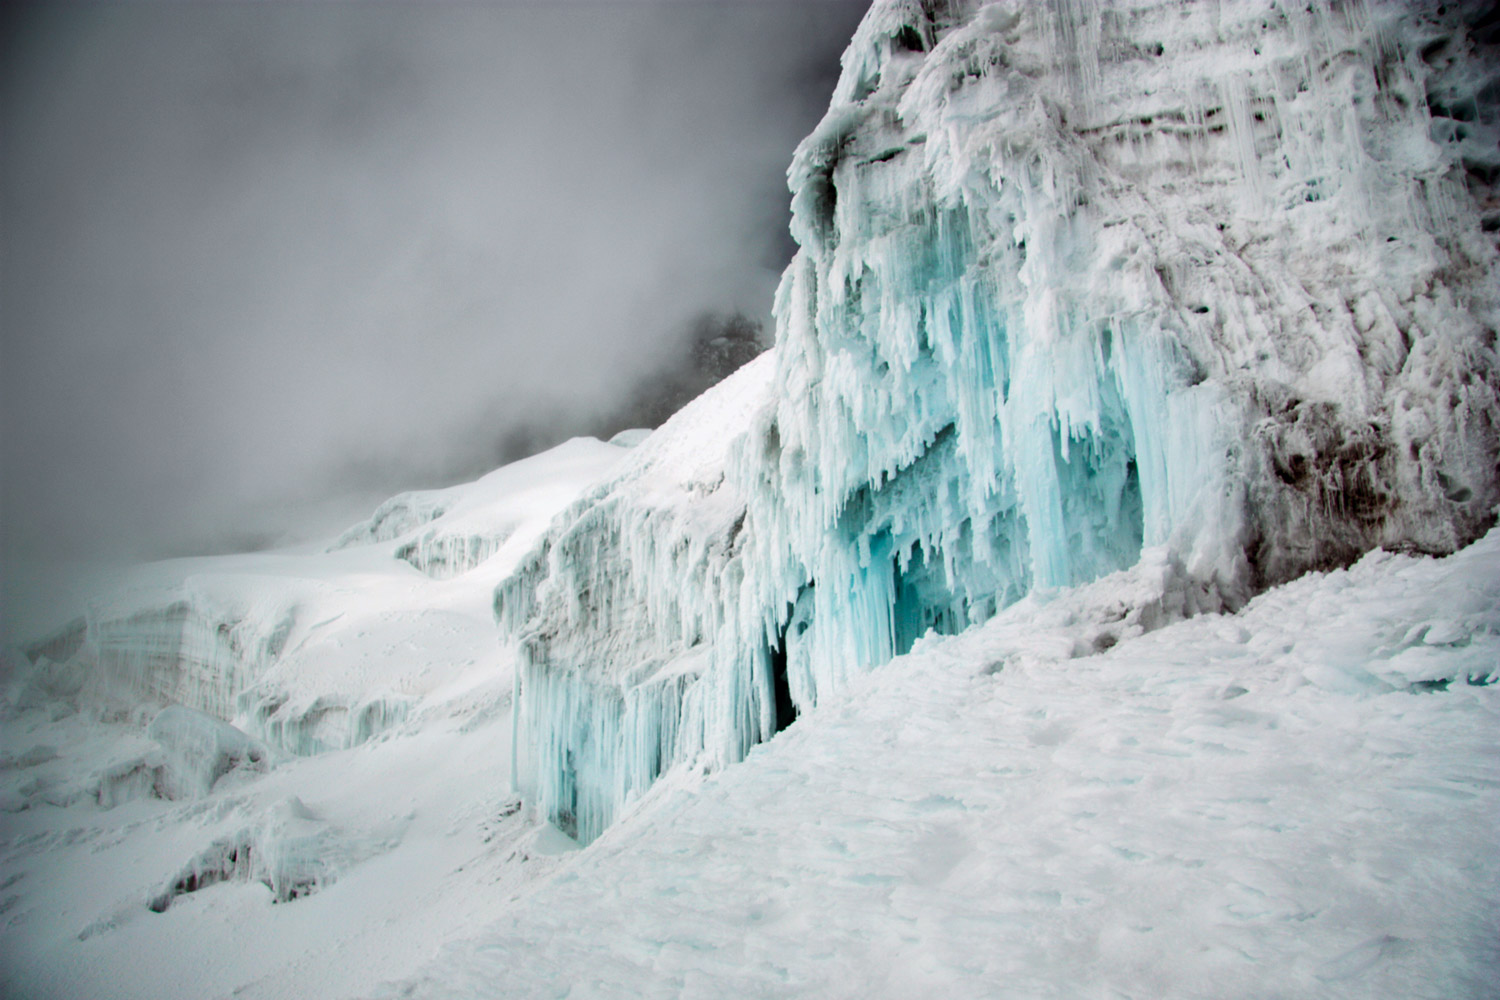 Из-за глобального потепления, в частности, тают горные ледники — например, вершина потухшего вулкана Чимборасо в Андах